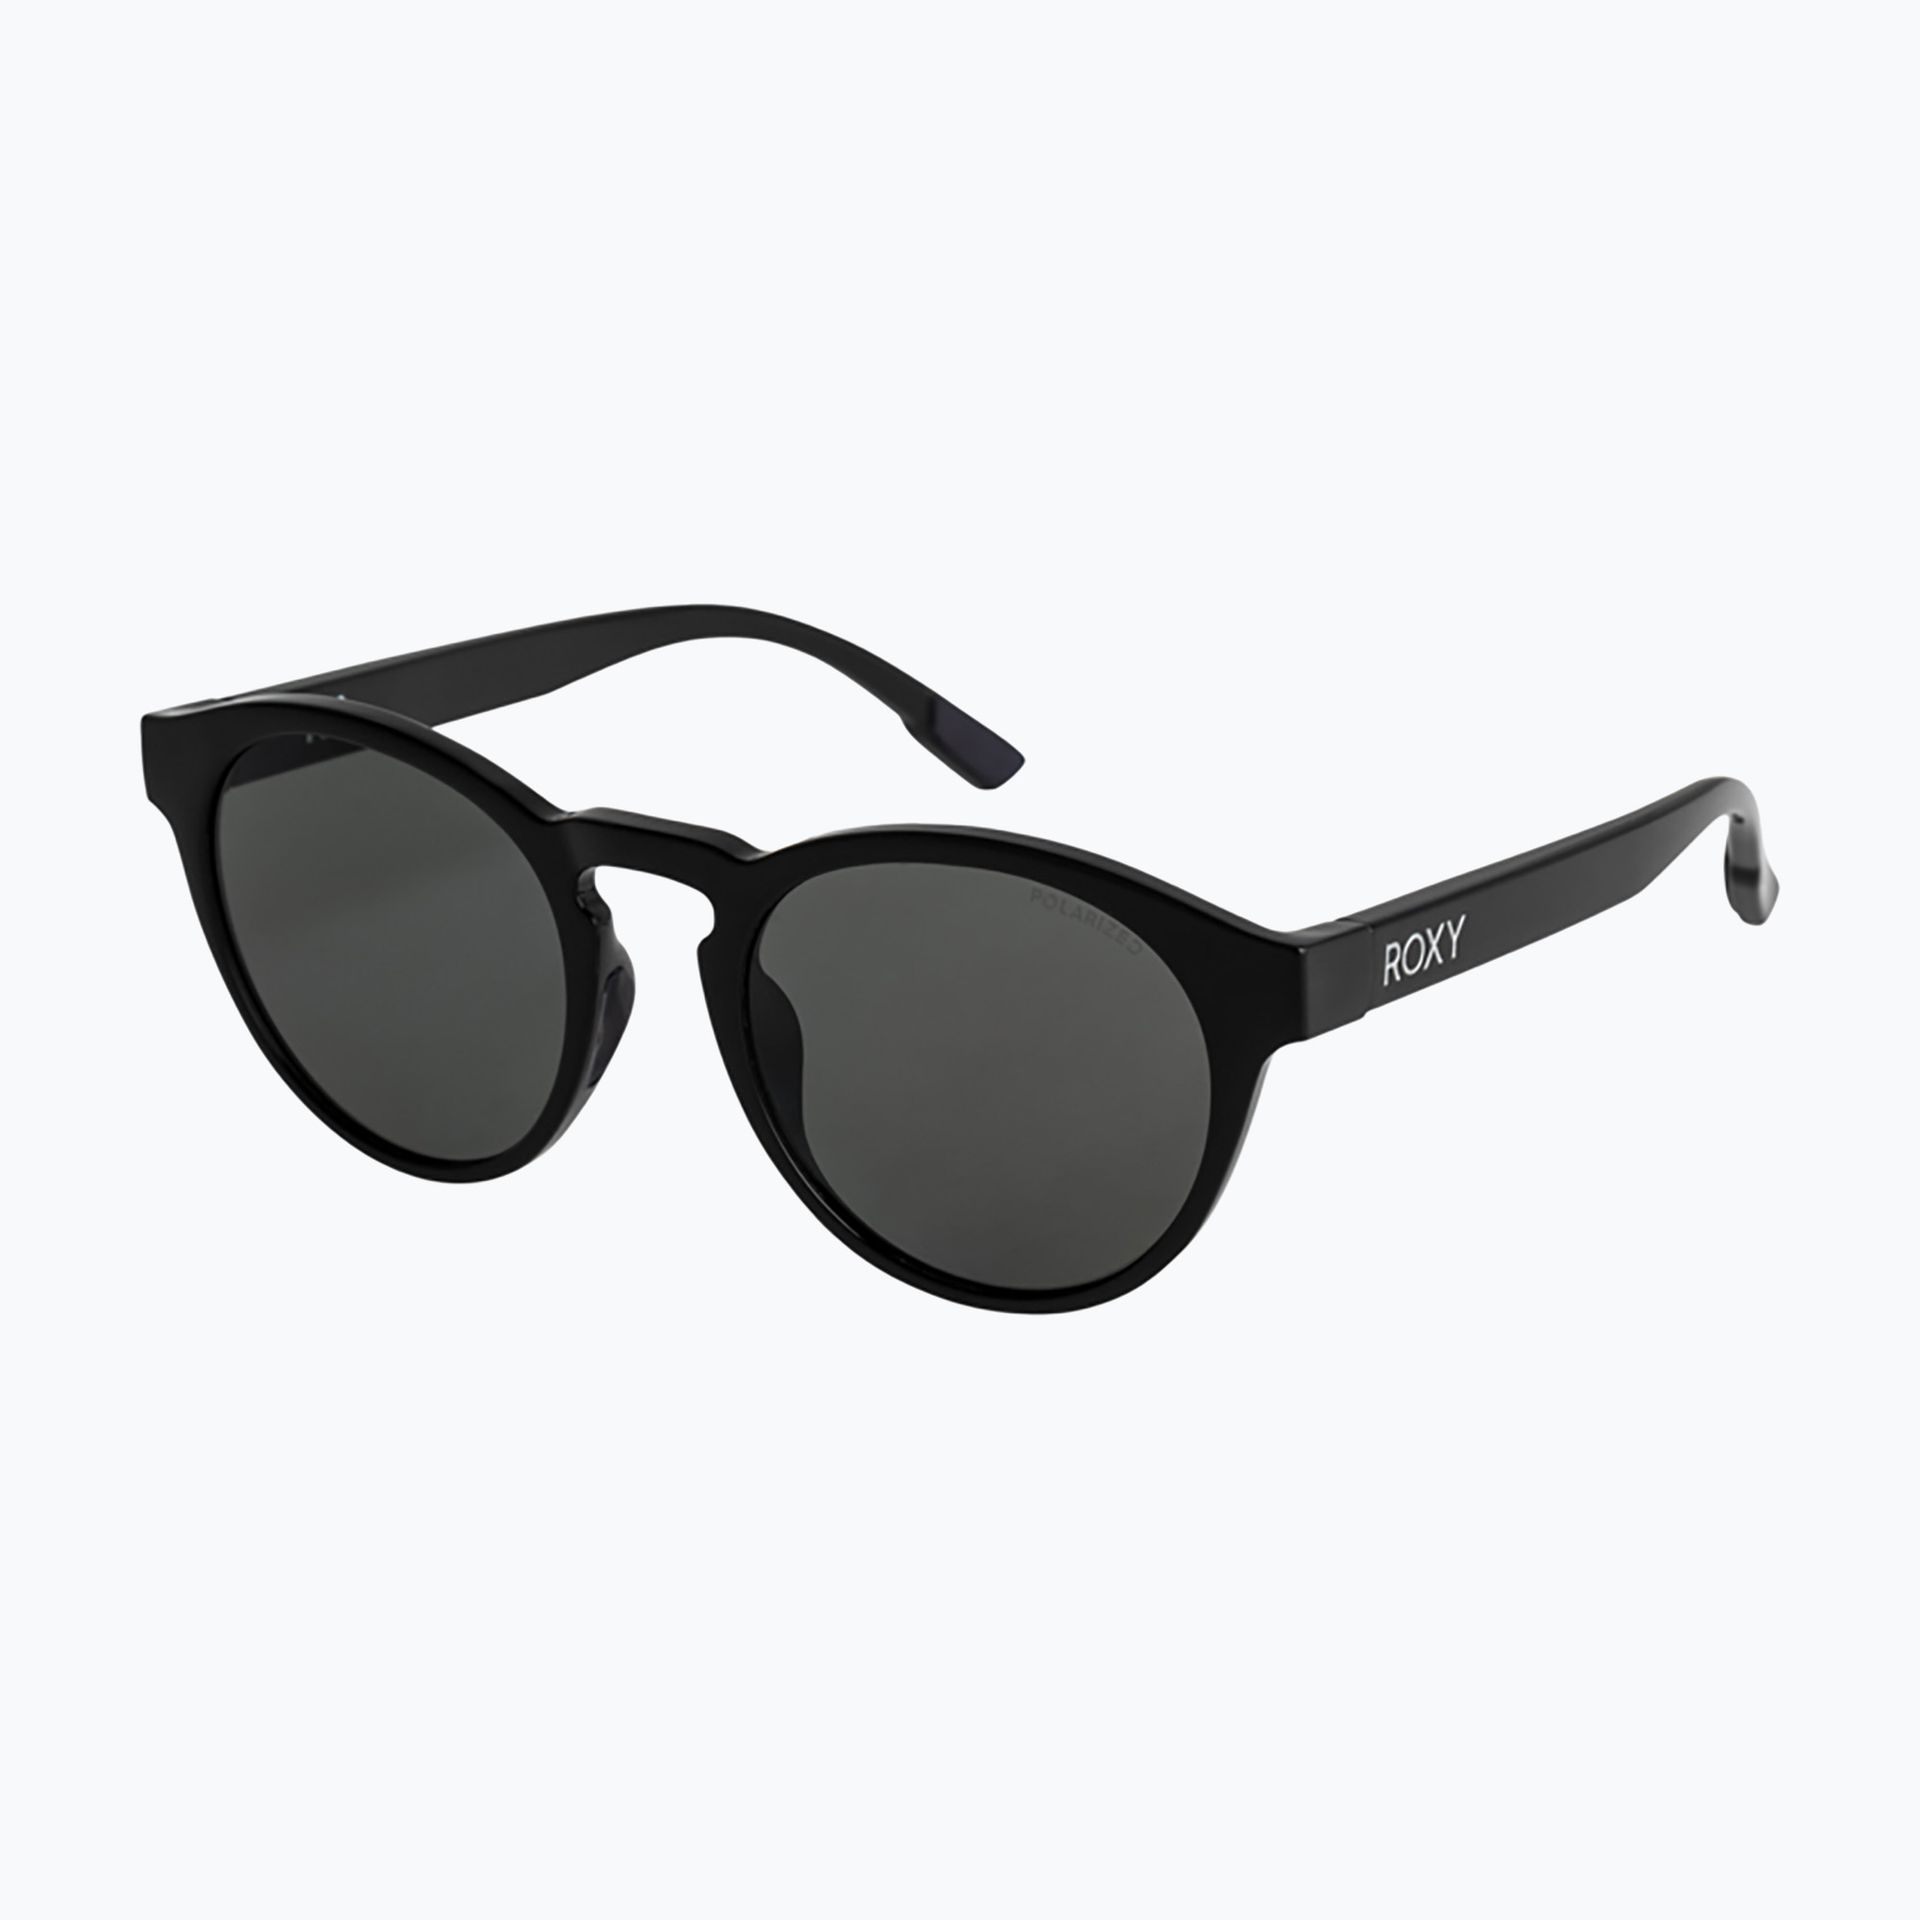 Okulary przeciwsłoneczne damskie ROXY Ivi Polarized black/grey | WYSYŁKA W 24H | 30 DNI NA ZWROT